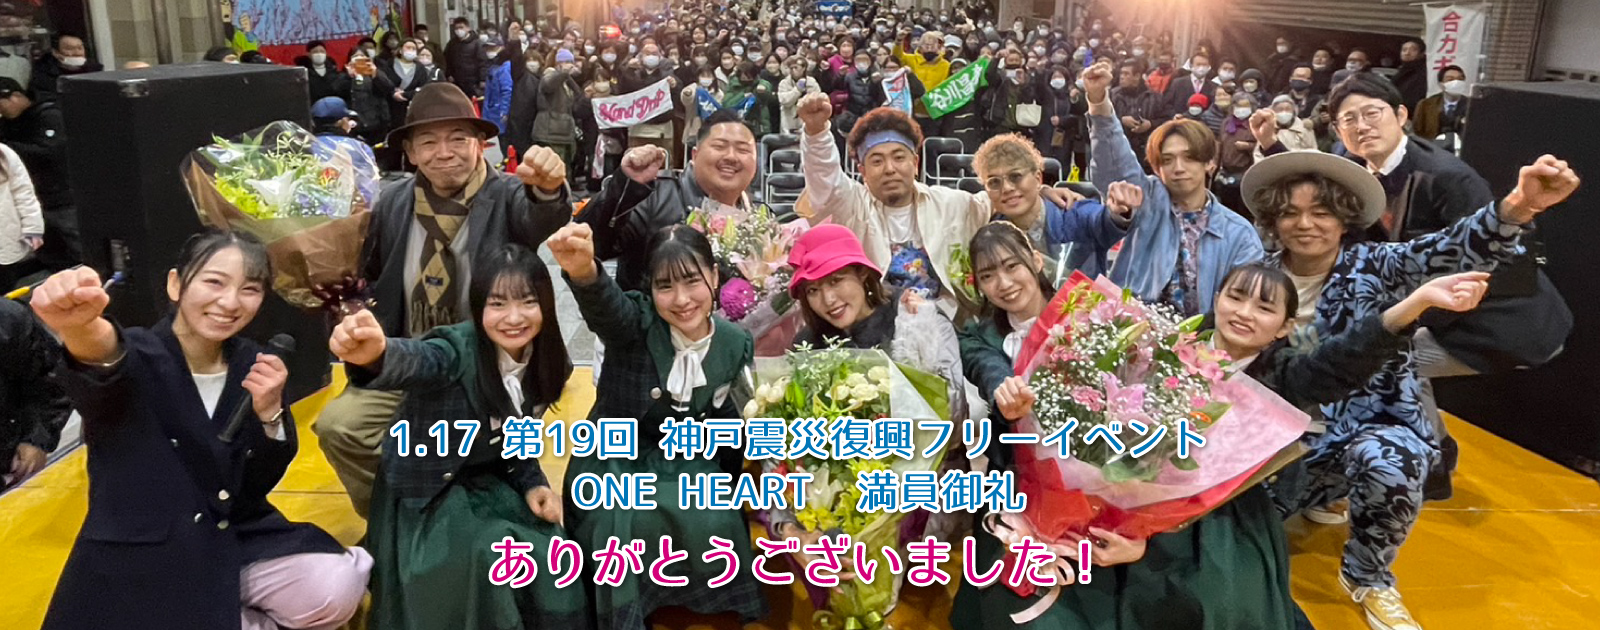 1.17 第19回 神戸震災復興フリーイベント ONE HEART 満員御礼 ありがとうございました！